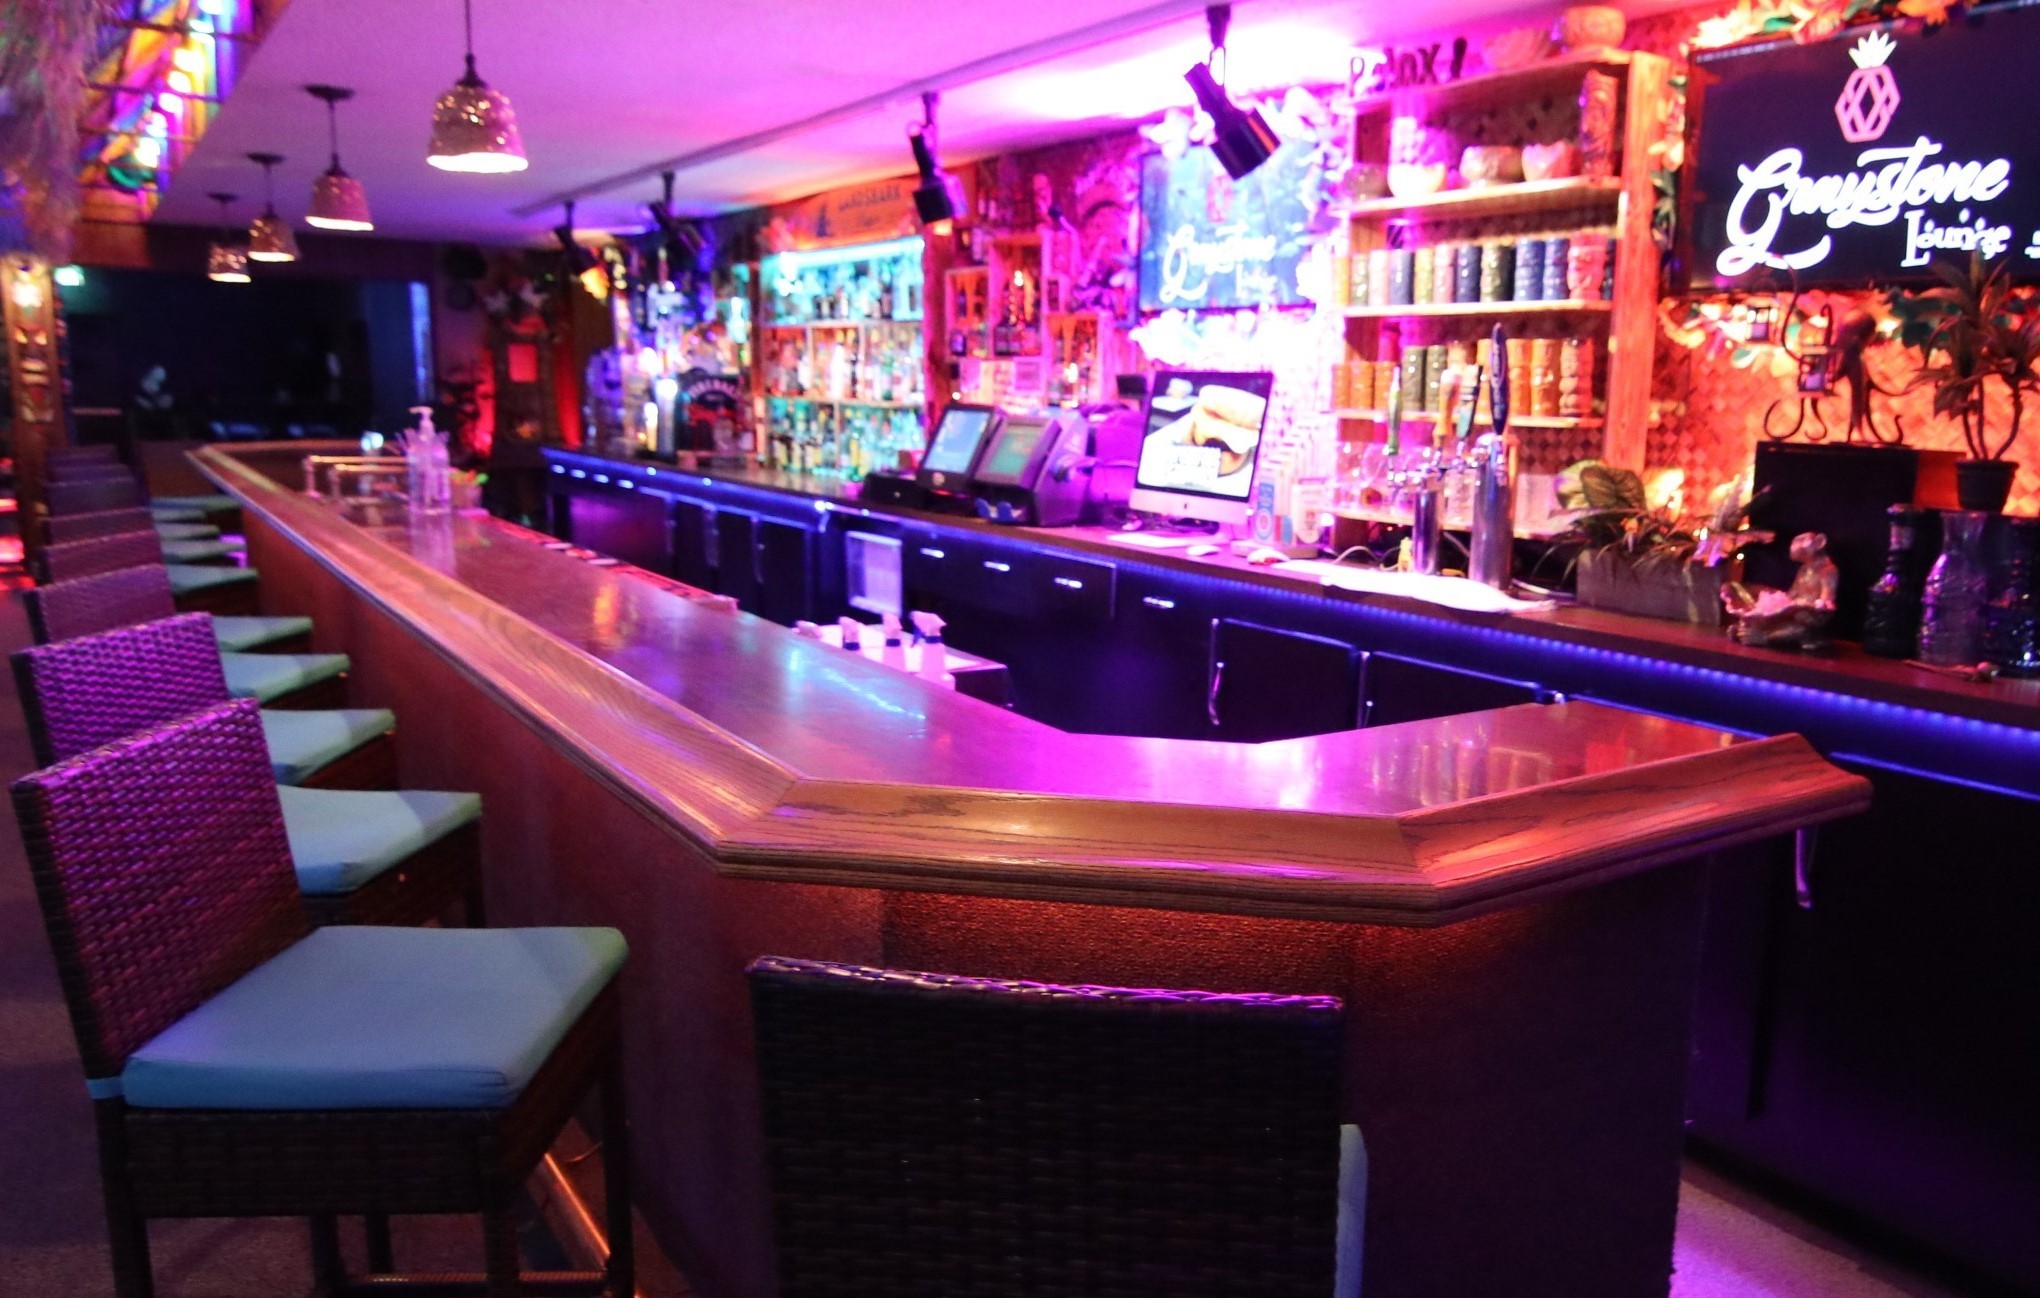 Graystone Lounge Bar